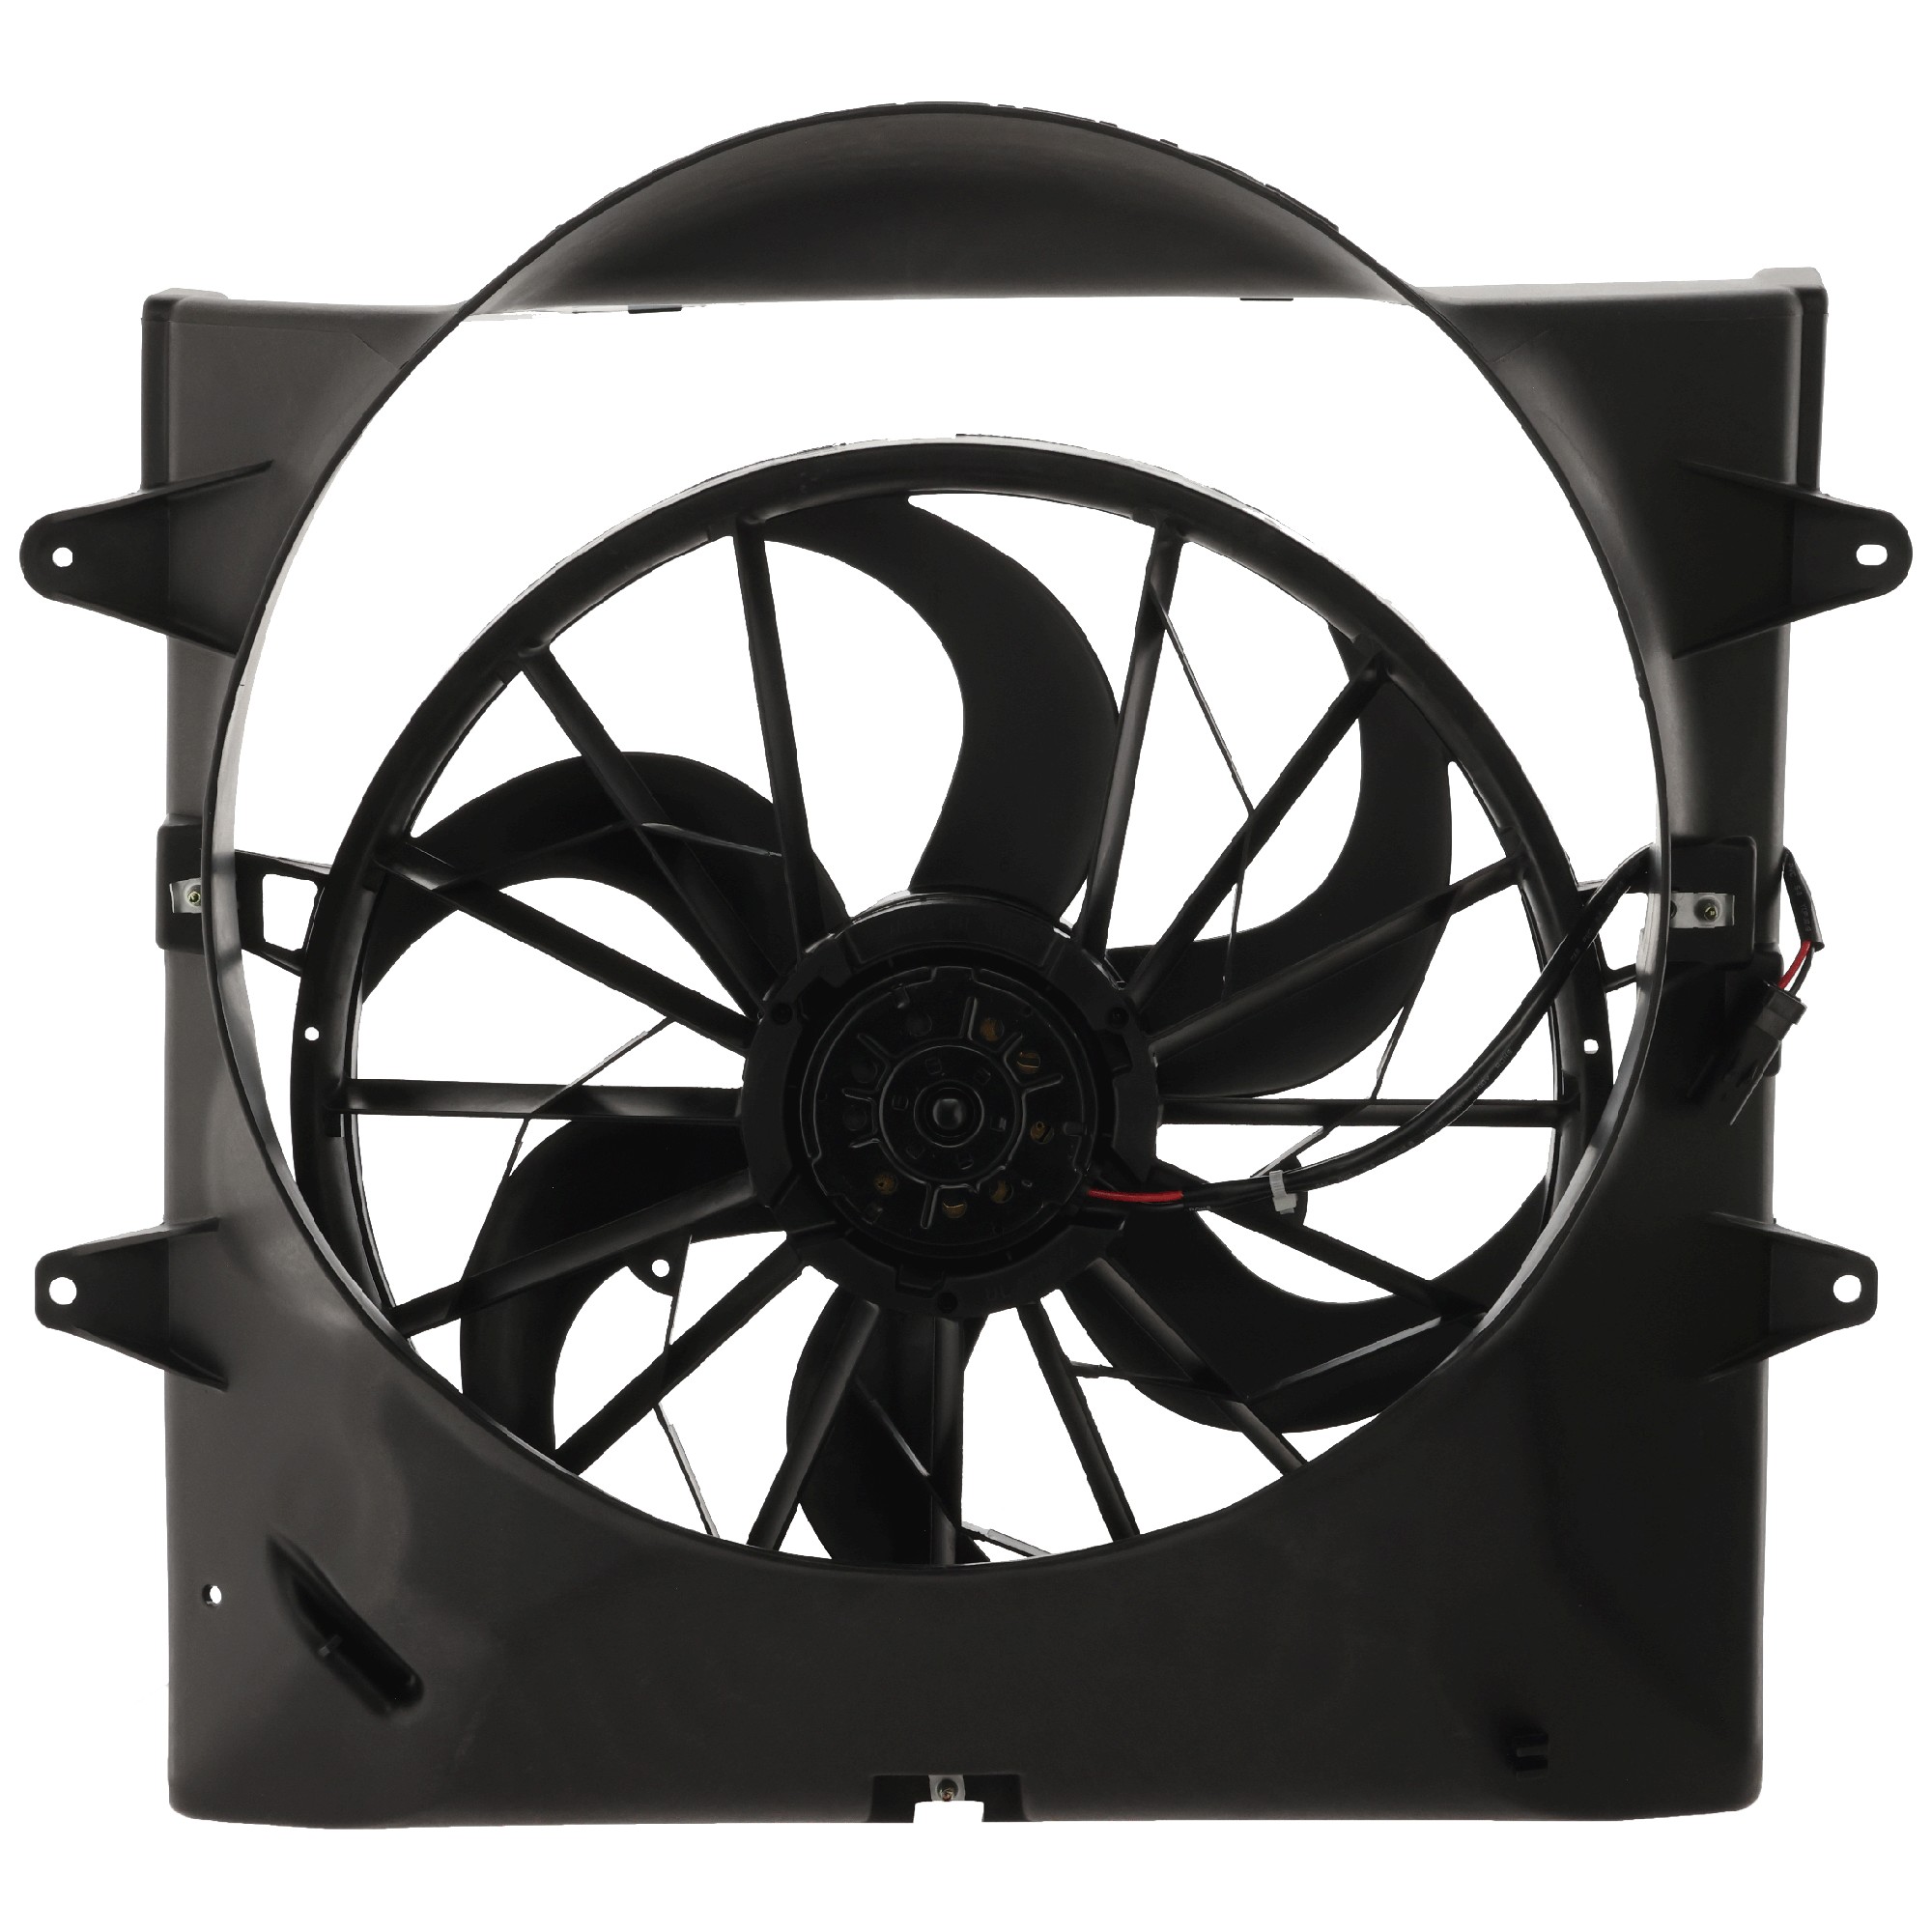 Jeep Cooling Fan Assembly-Single fan, Radiator Fan, Replacement REPJ160903